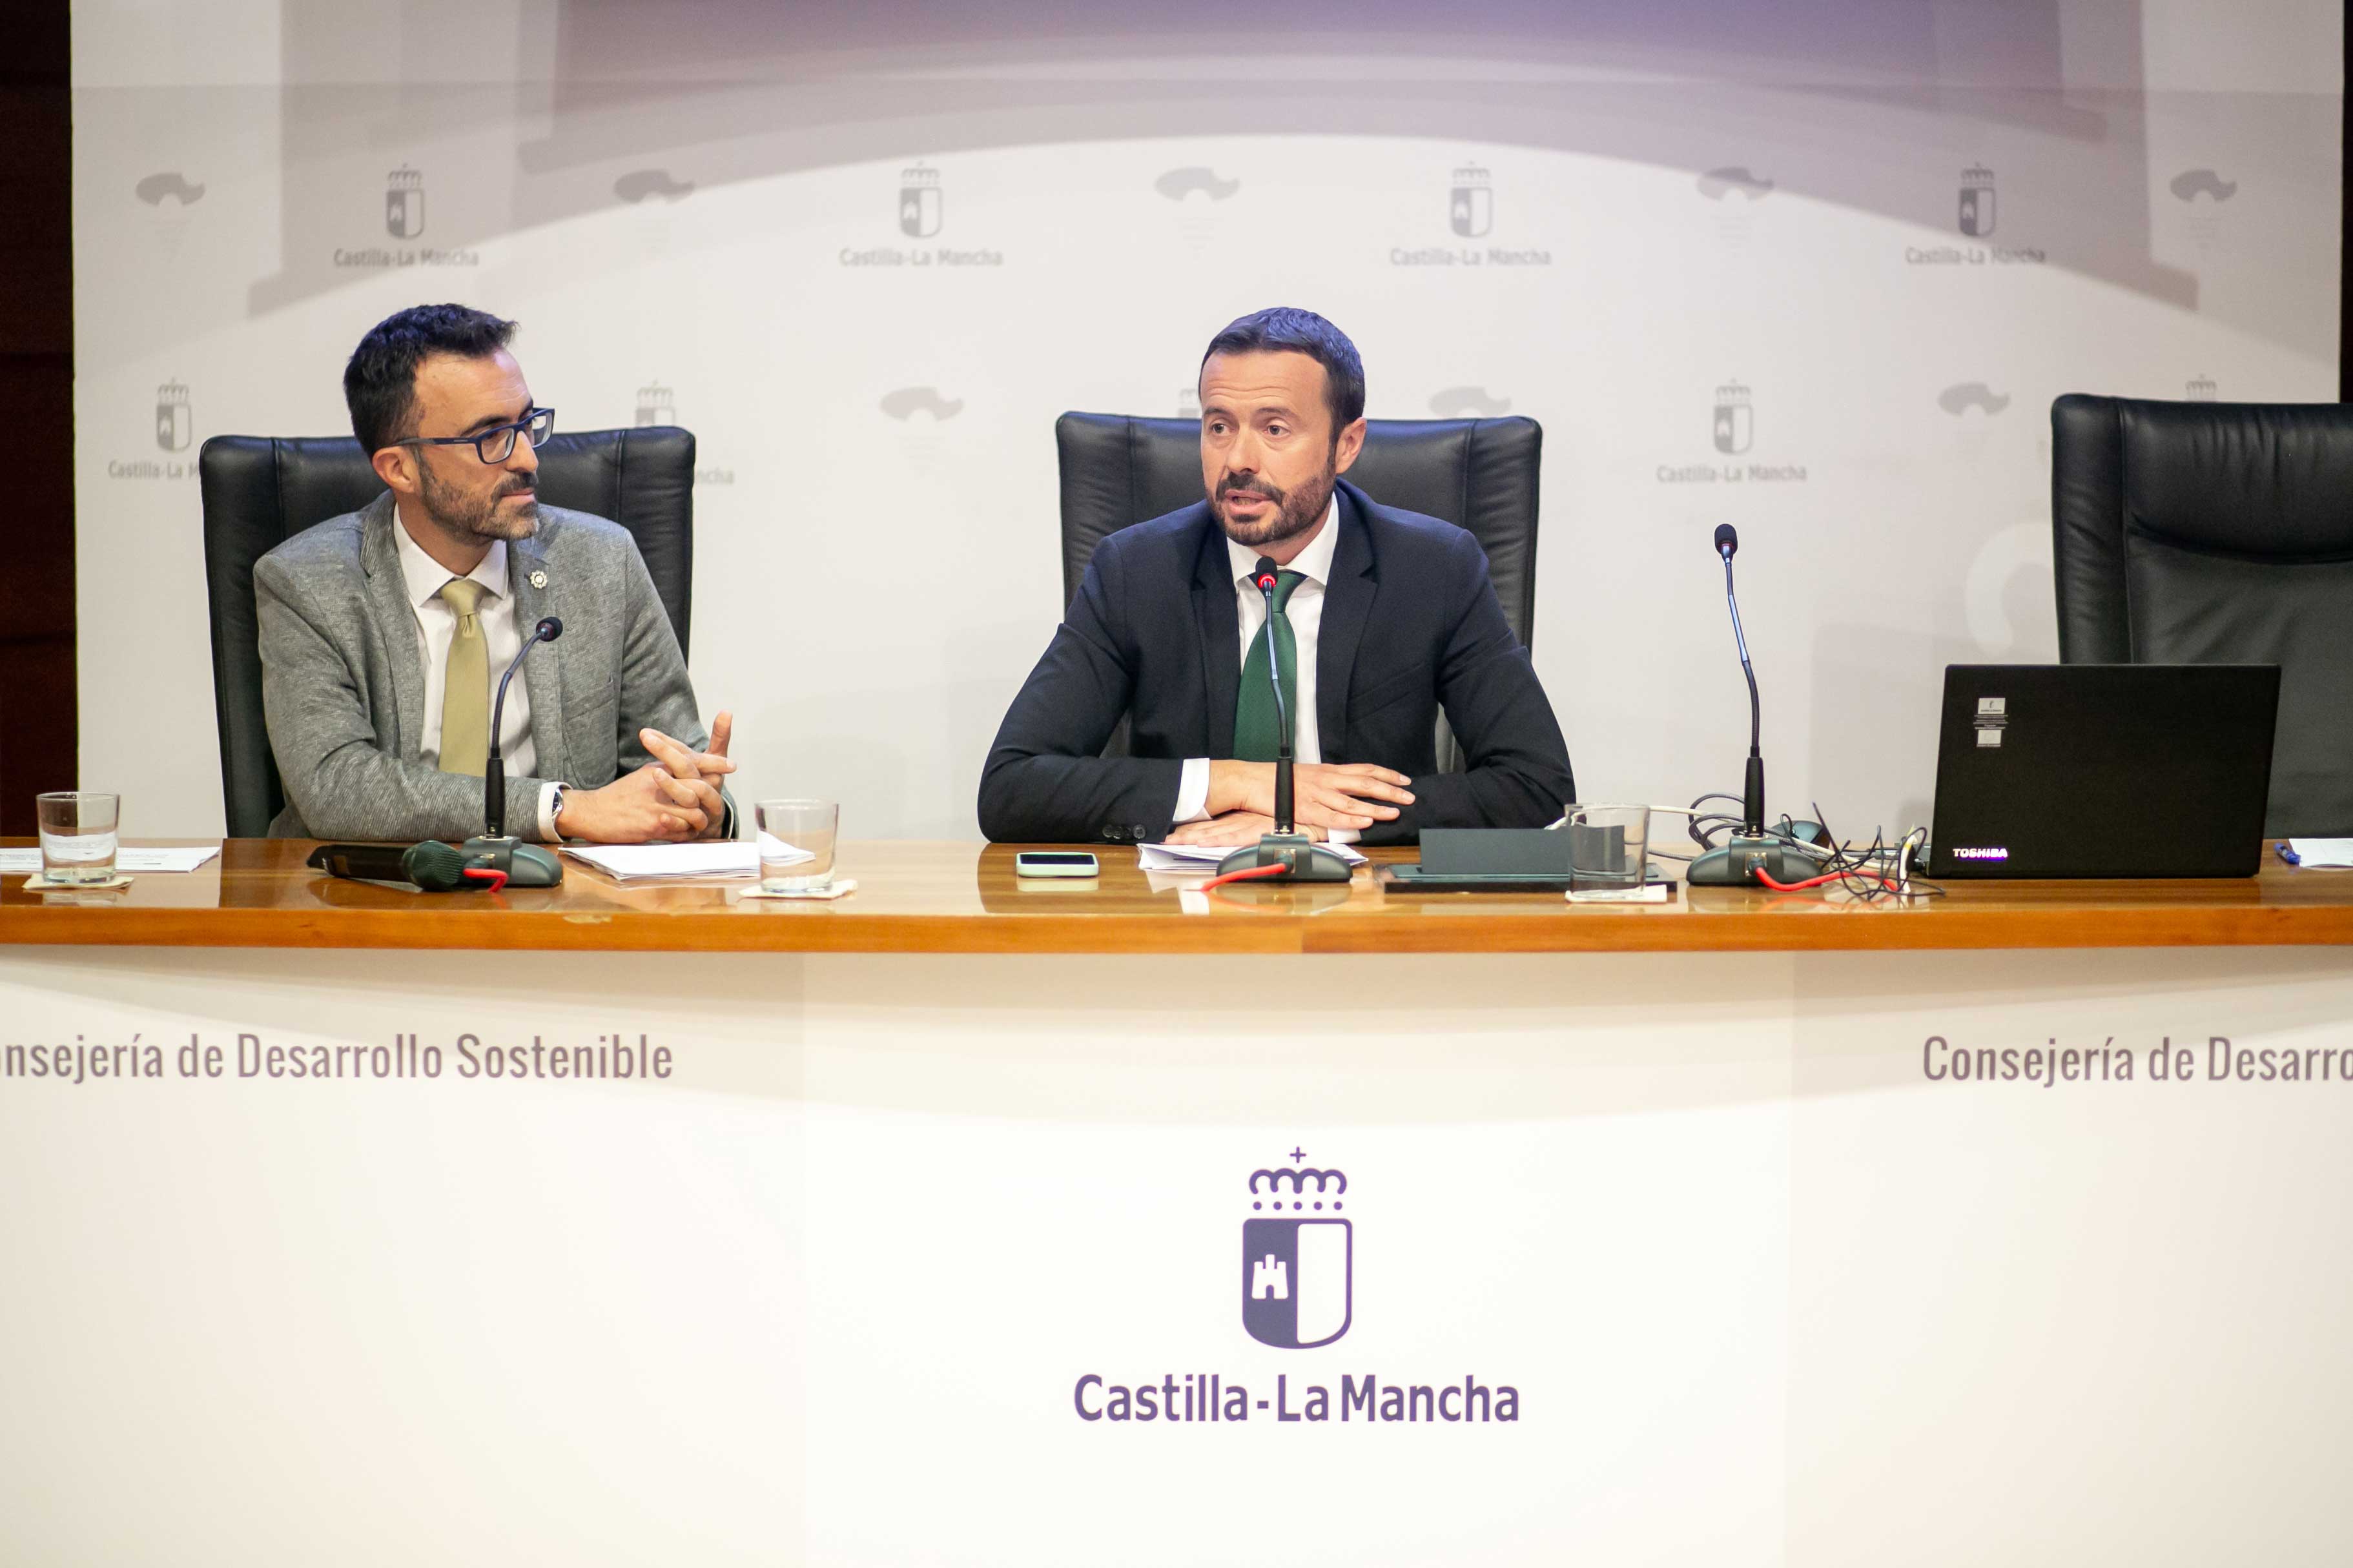 Lanzado un proyecto para mejorar la planificación de la Red de Áreas Protegidas de Castilla-La Mancha con un Plan Director y una nueva marca corporativa